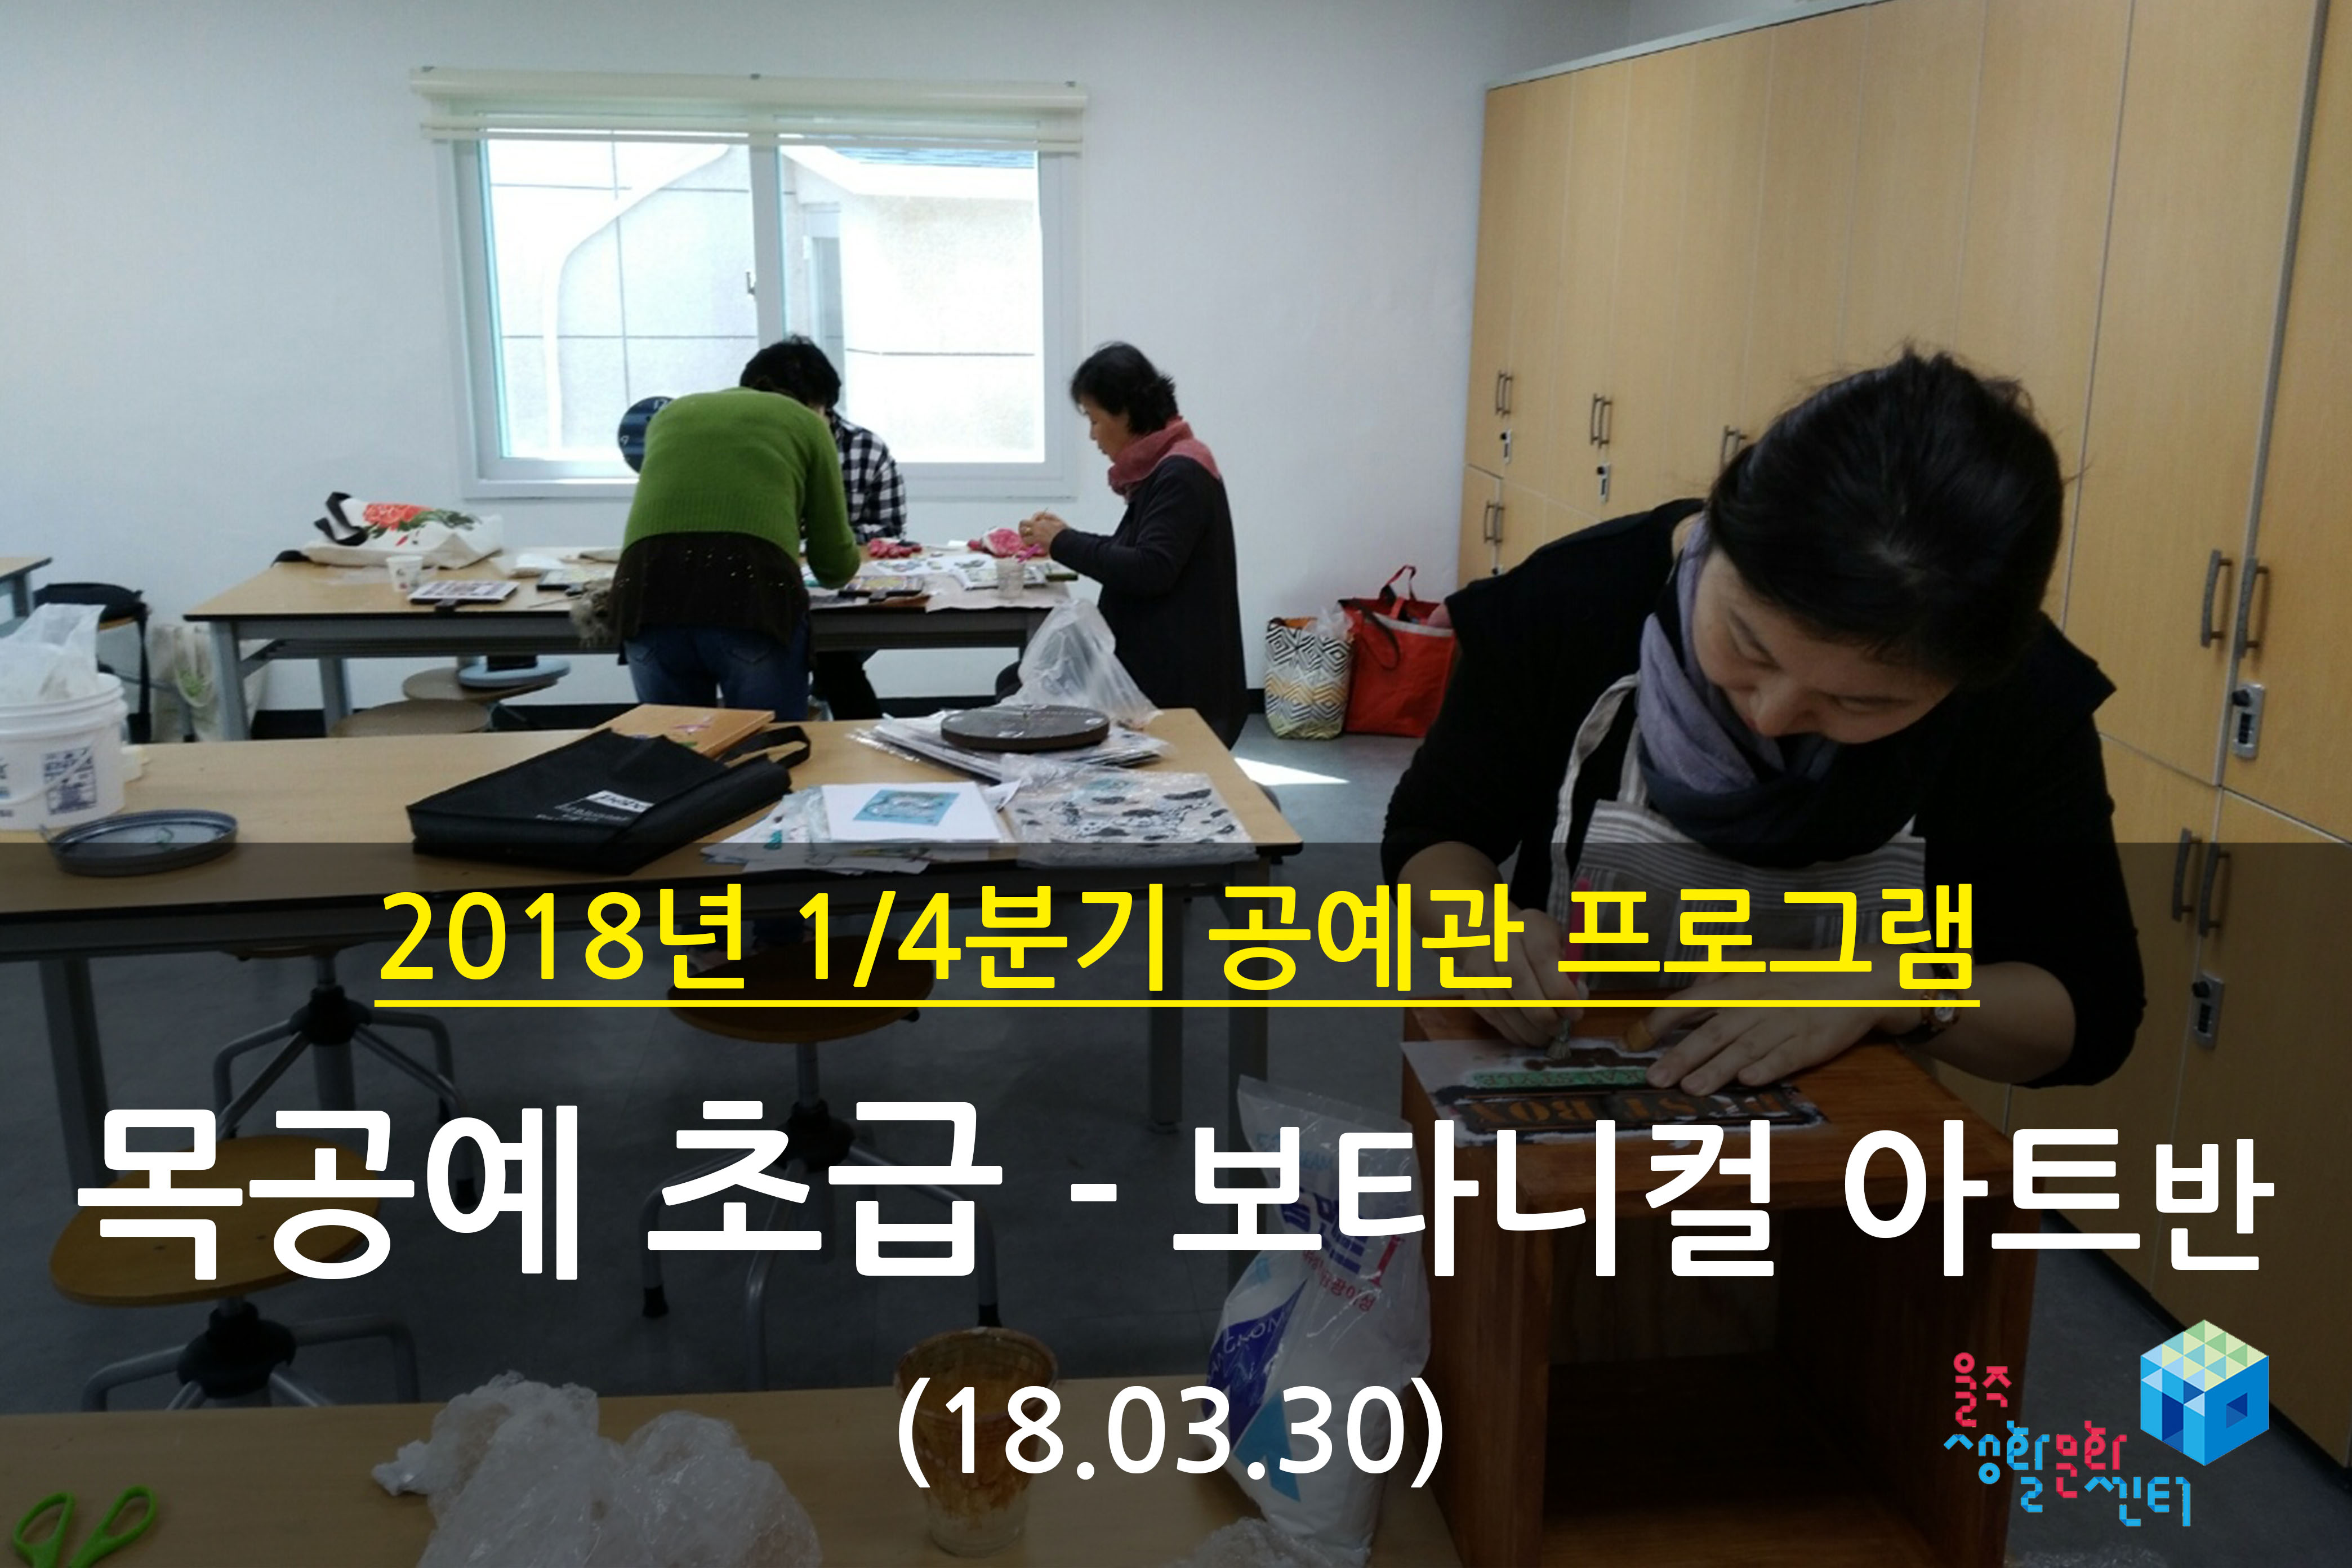 2018.03.30 _ 목공예 초급 - 보타니컬 아트반 _ 1/4분기 12주차 수업